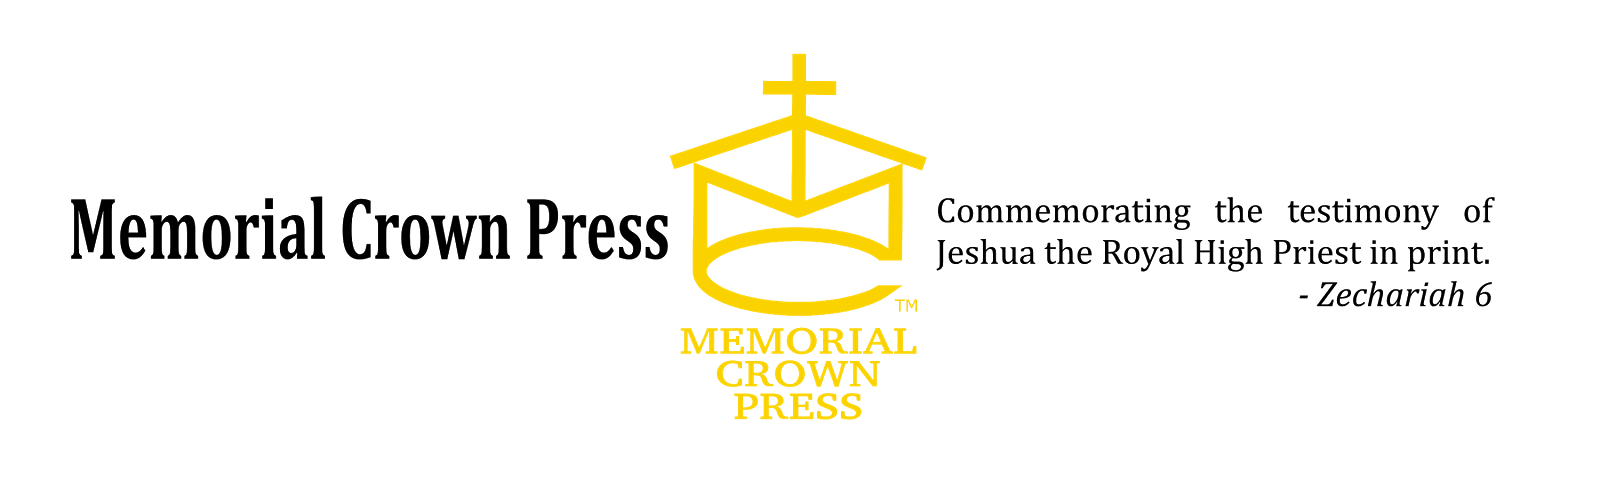 Memorial Crown Press